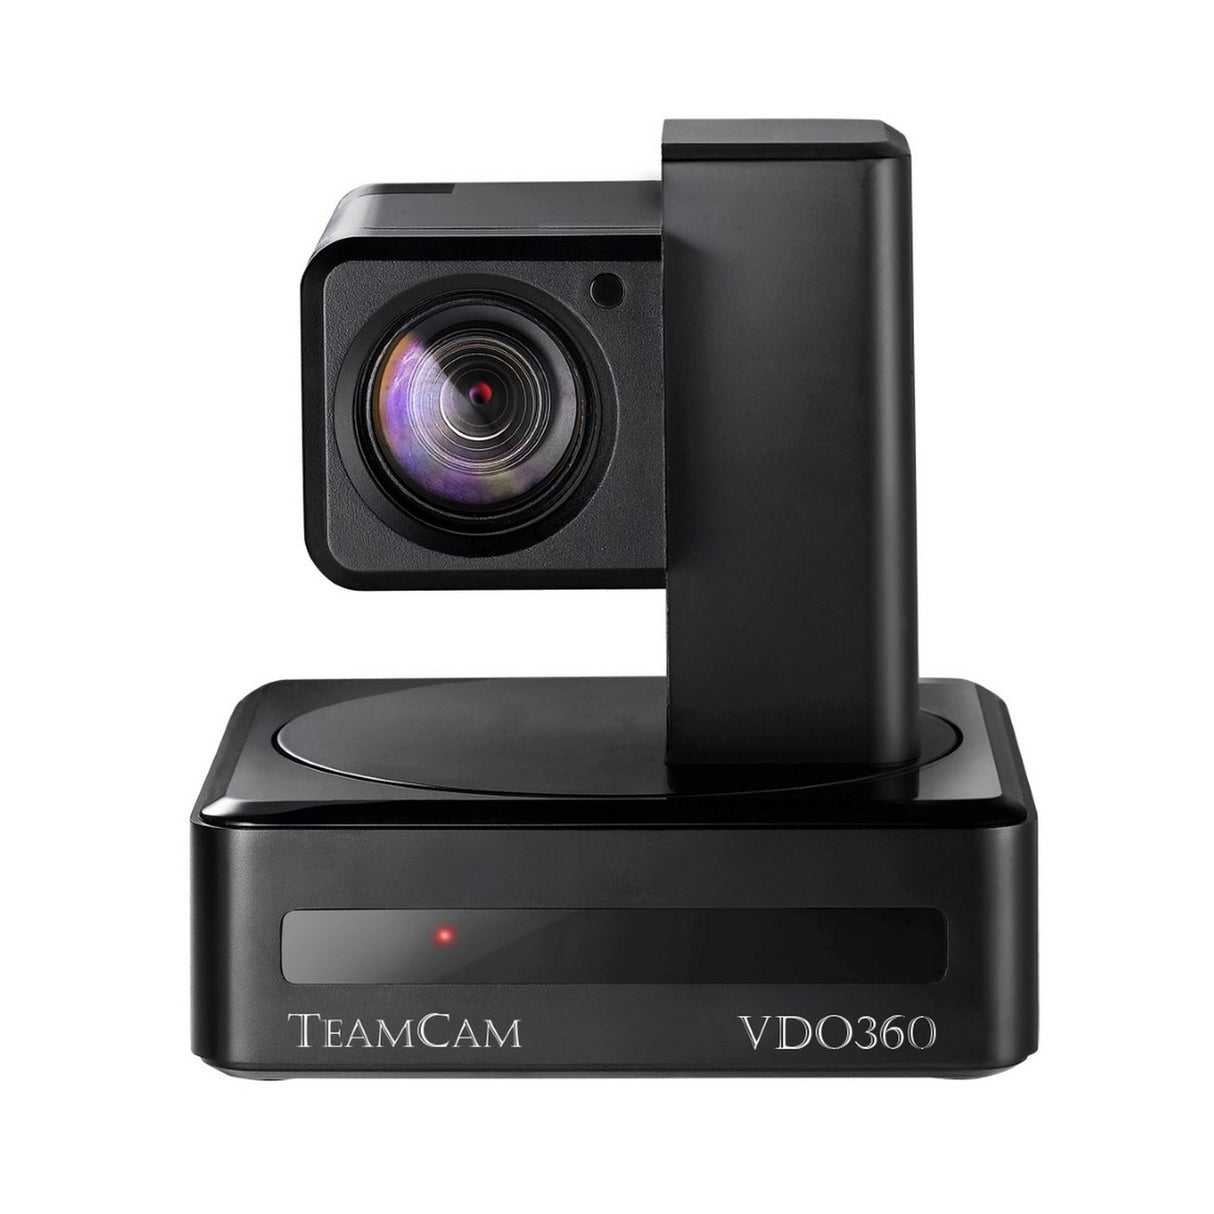 VDO360 TeamCam USB PTZ Camera